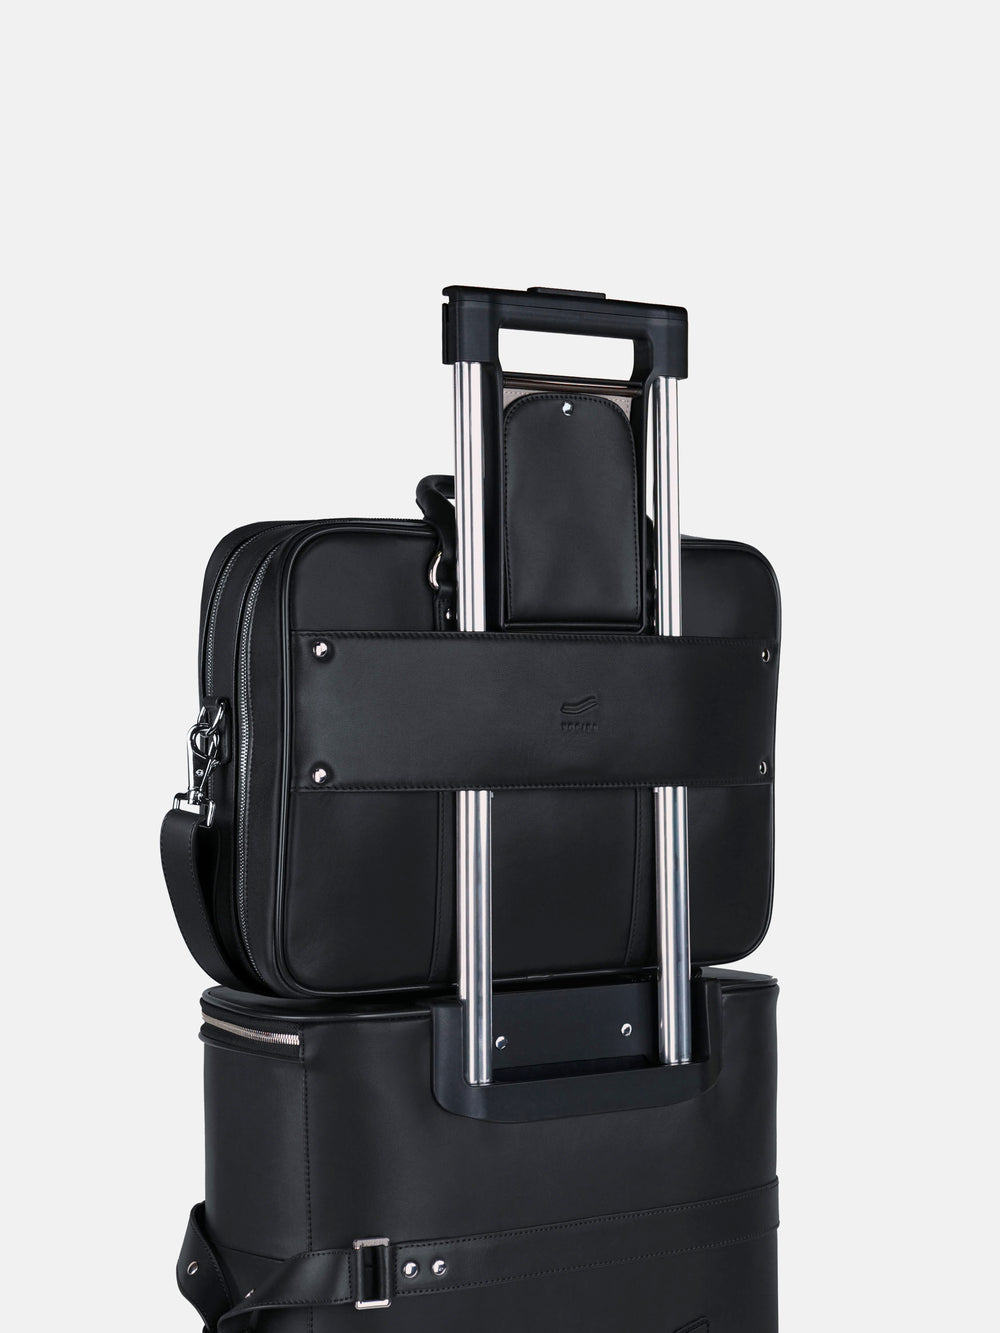 f26 on luggage black leather schwarzes leder